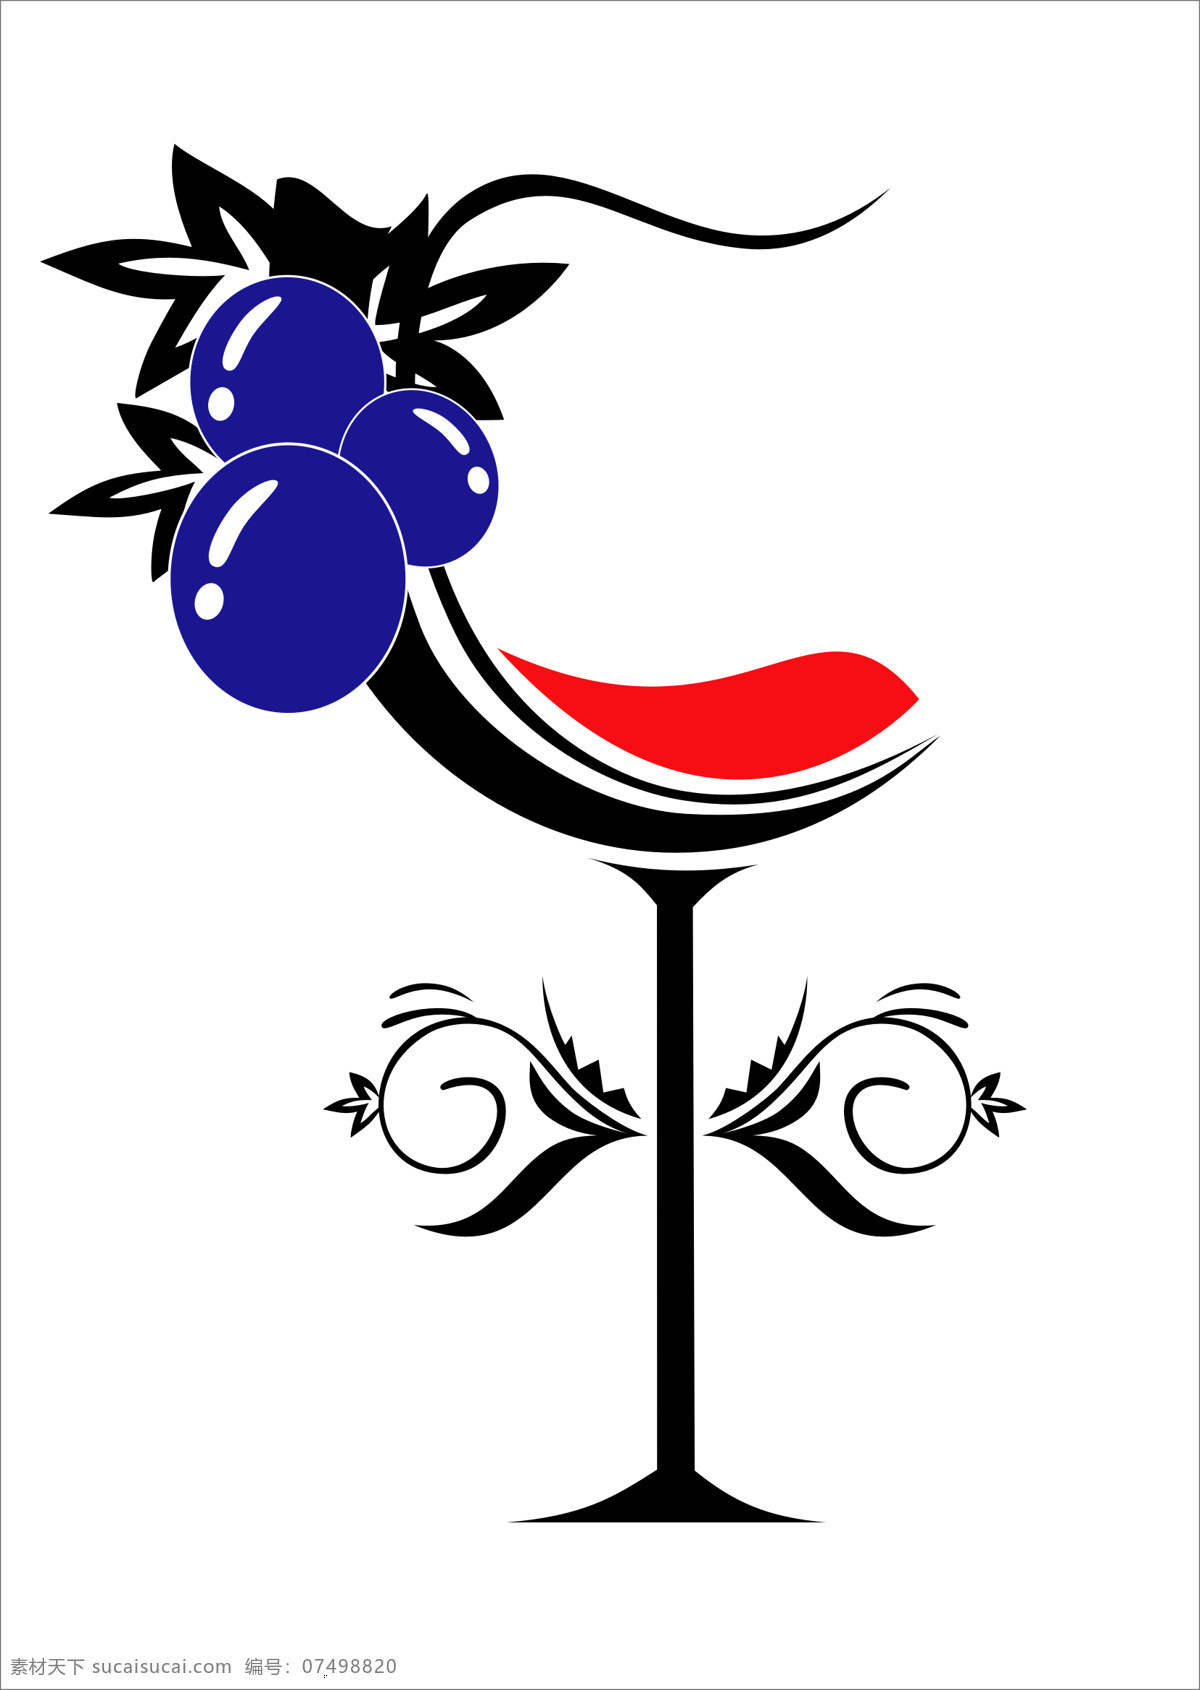 红酒logo 红酒 葡萄酒 logo 标识 logo设计